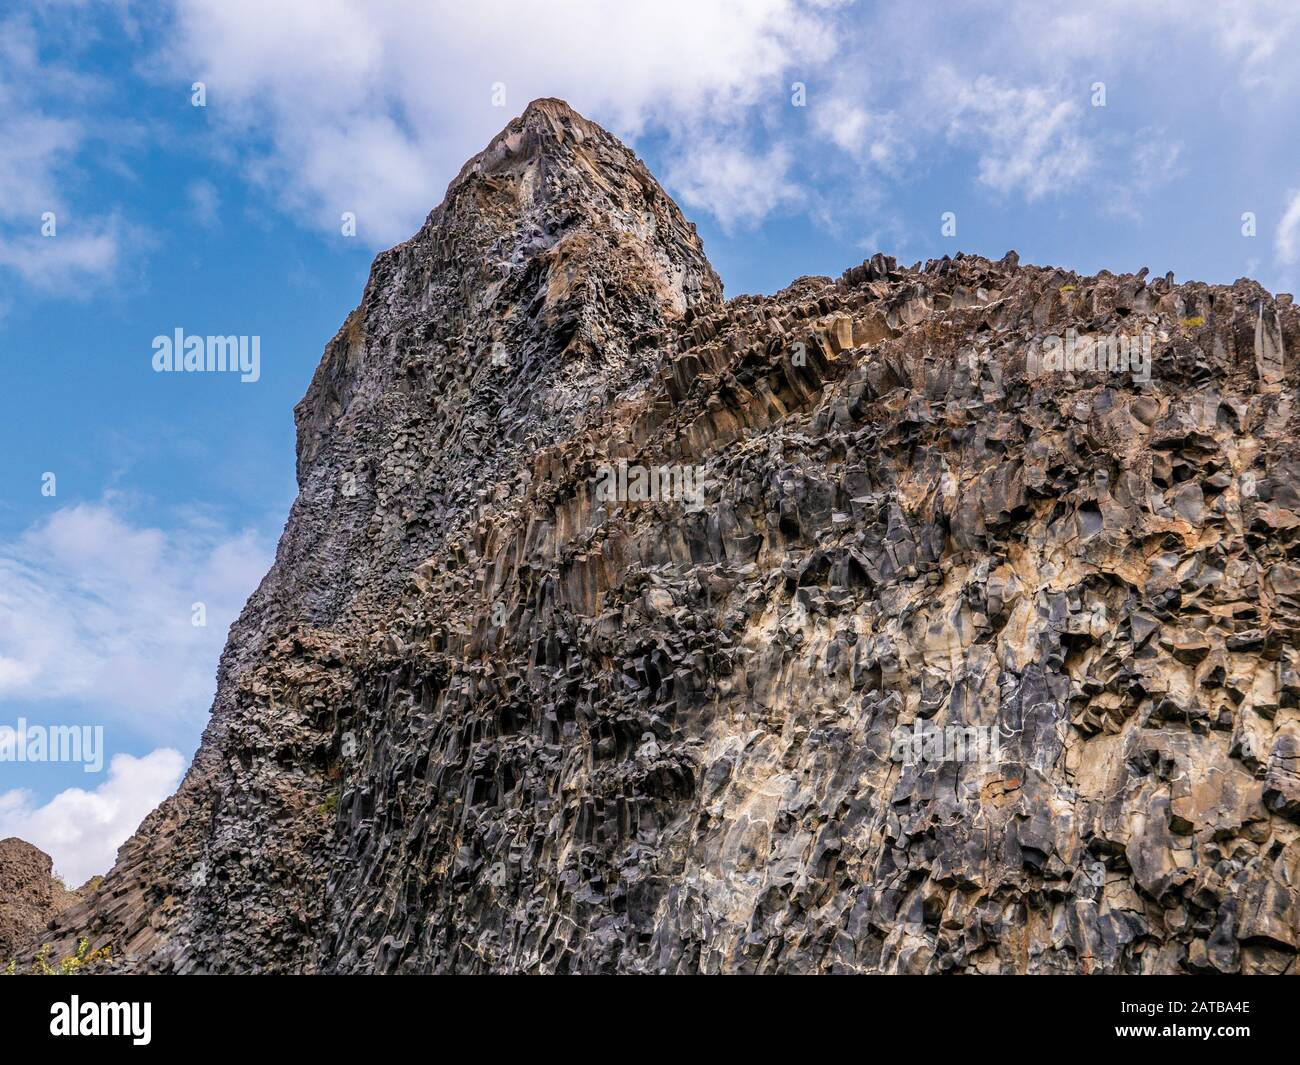 Die Felswände Hljóðaklettar im Herzen Islands.Eins der größten Naturwunder der Insel. Auch Echofelsen genannt, weil man manchmal Wasser rauschen hört. Stock Photo